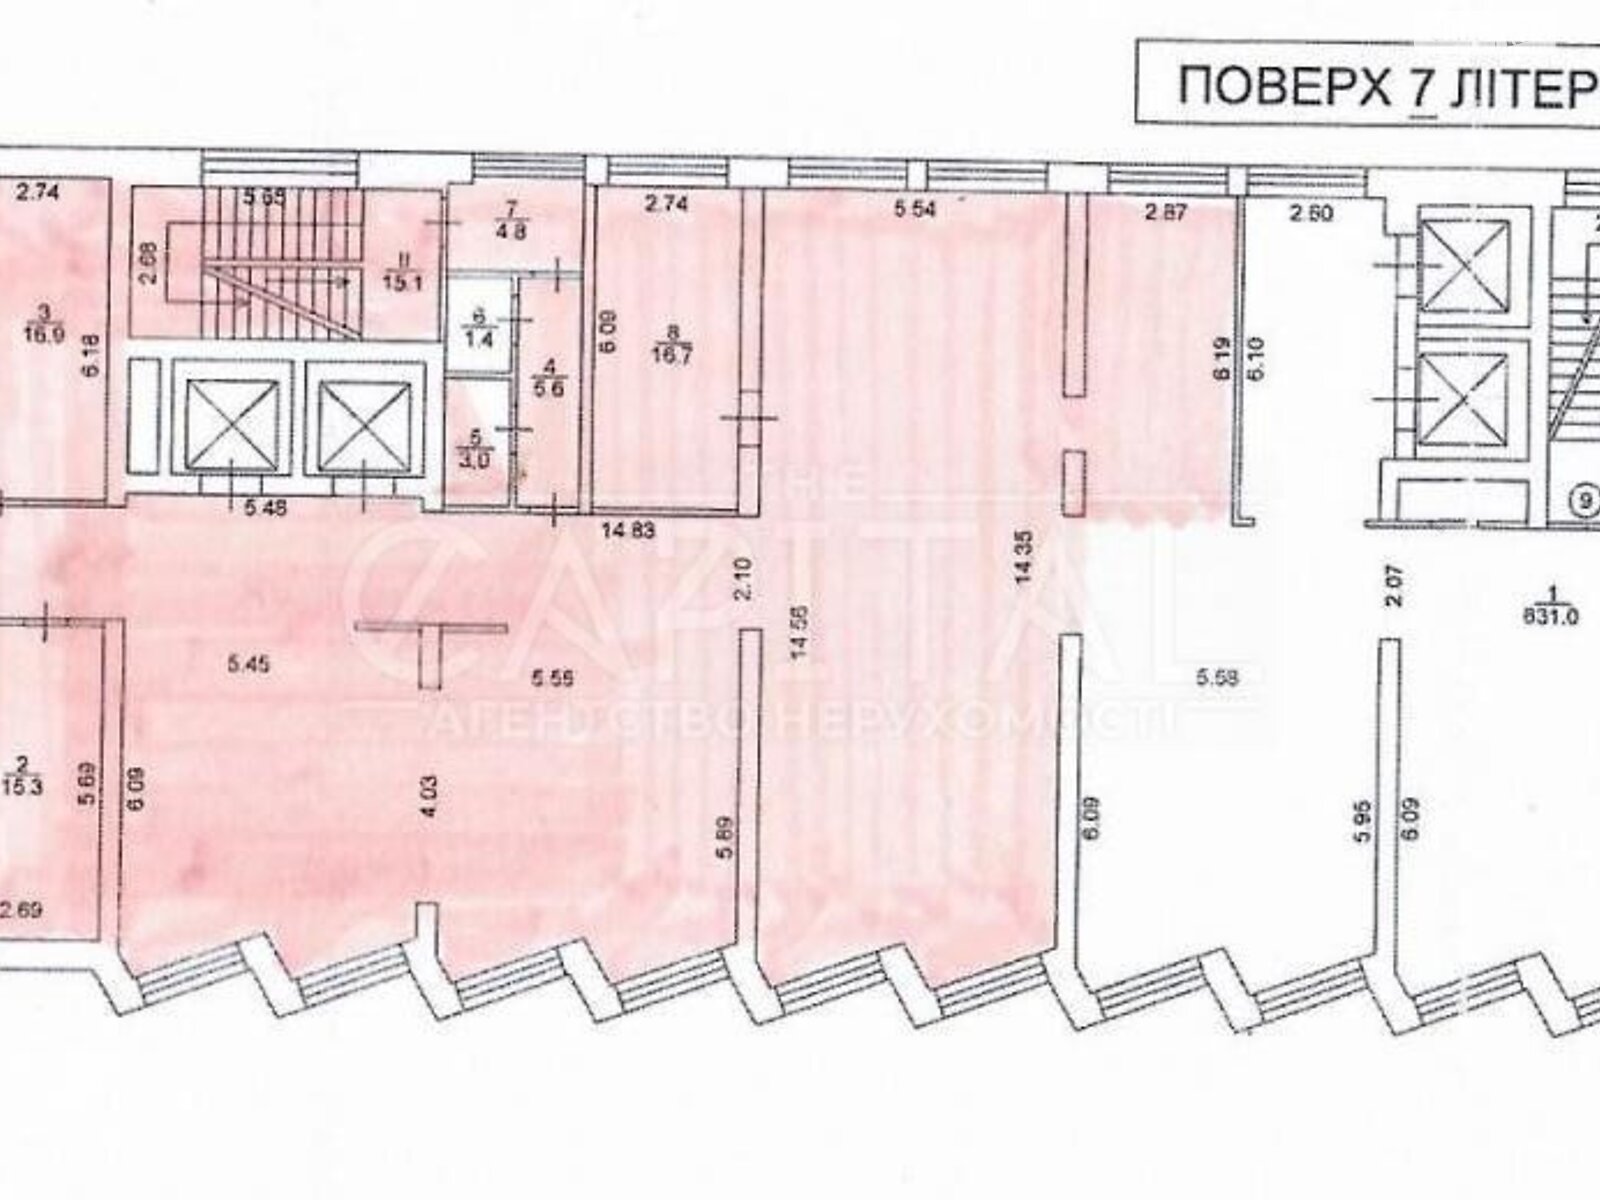 Оренда офісного приміщення в Києві, Ниж, приміщень - 1, поверх - 7 фото 1